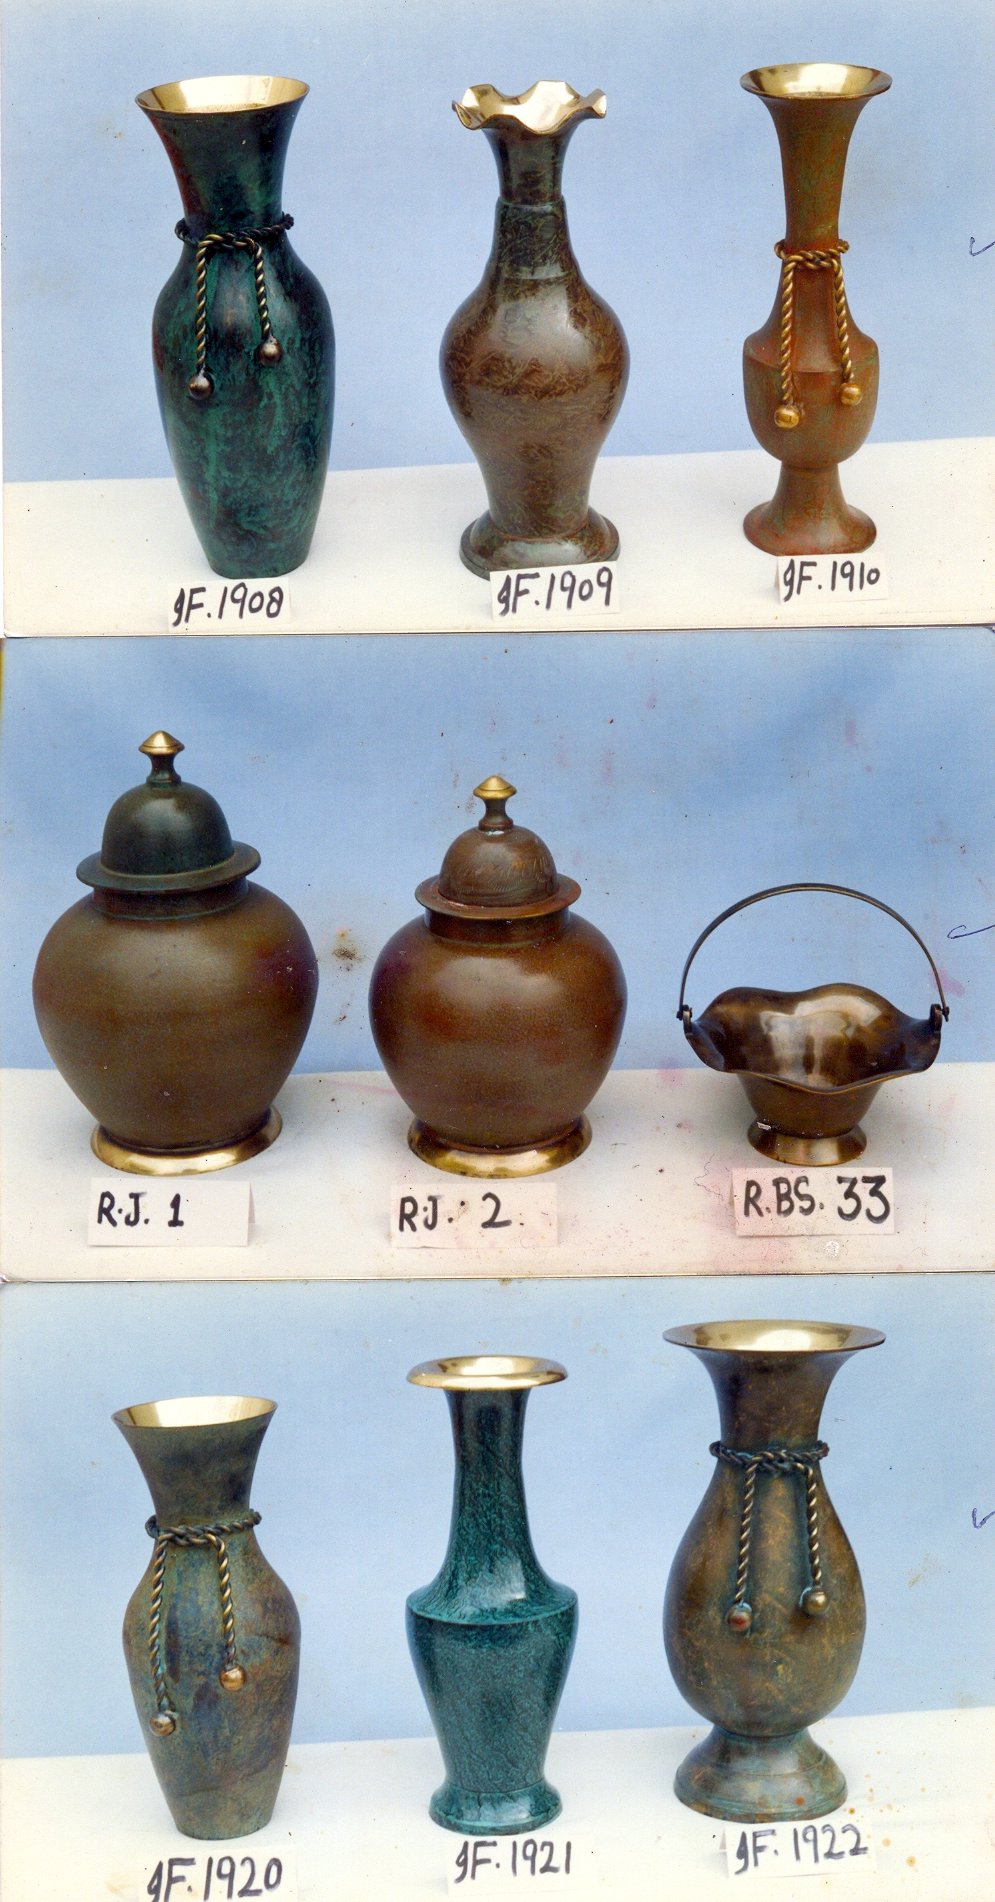 Metal Vases